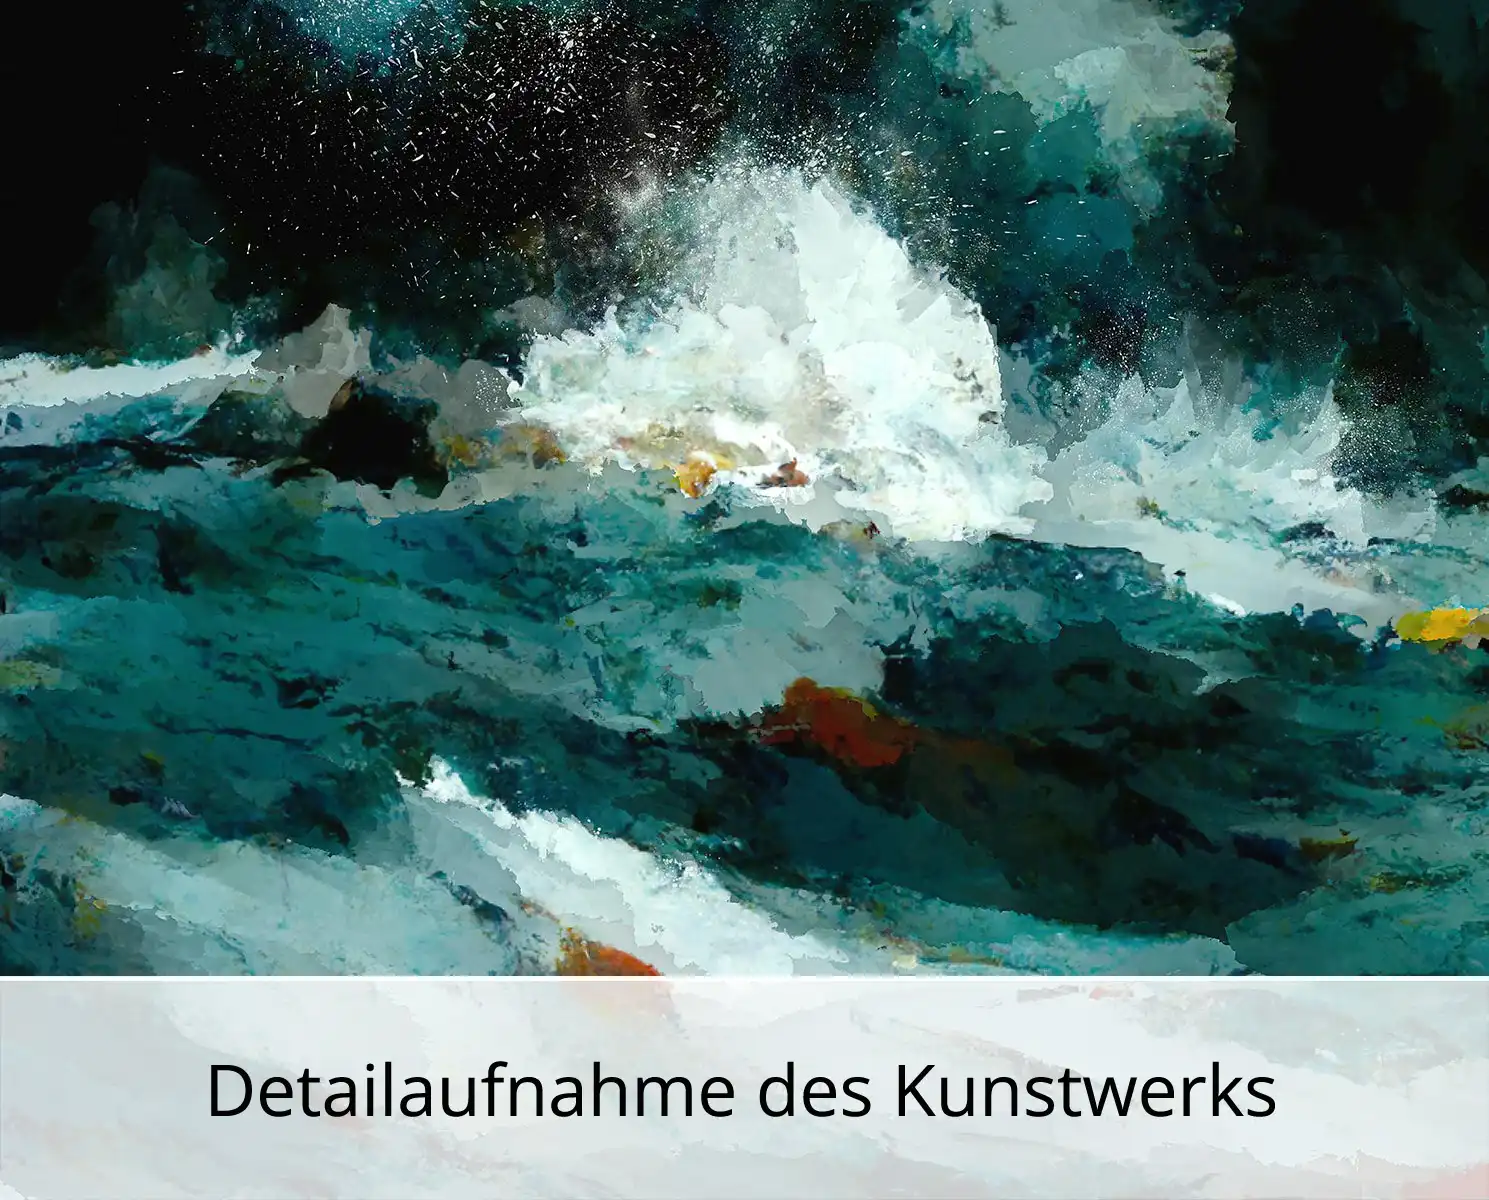 Kunstdruck, signiert: "Orkan auf hoher See I", Holger Mühlbauer-Gardemin, Edition, Nr. 1/100